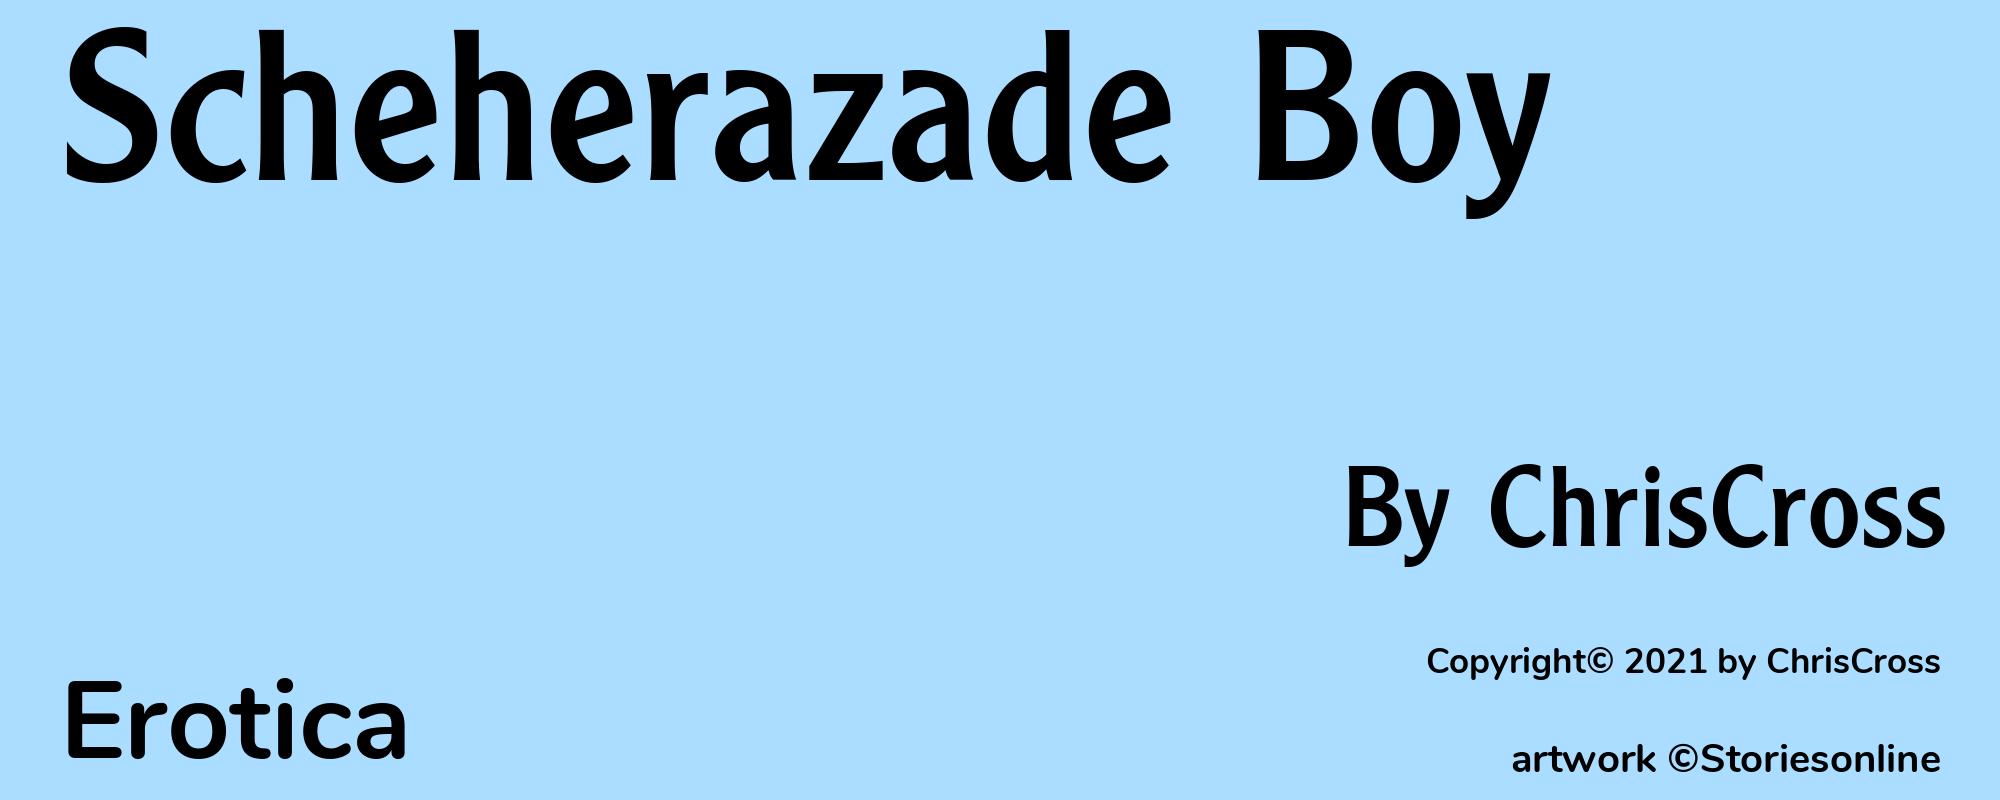 Scheherazade Boy - Cover